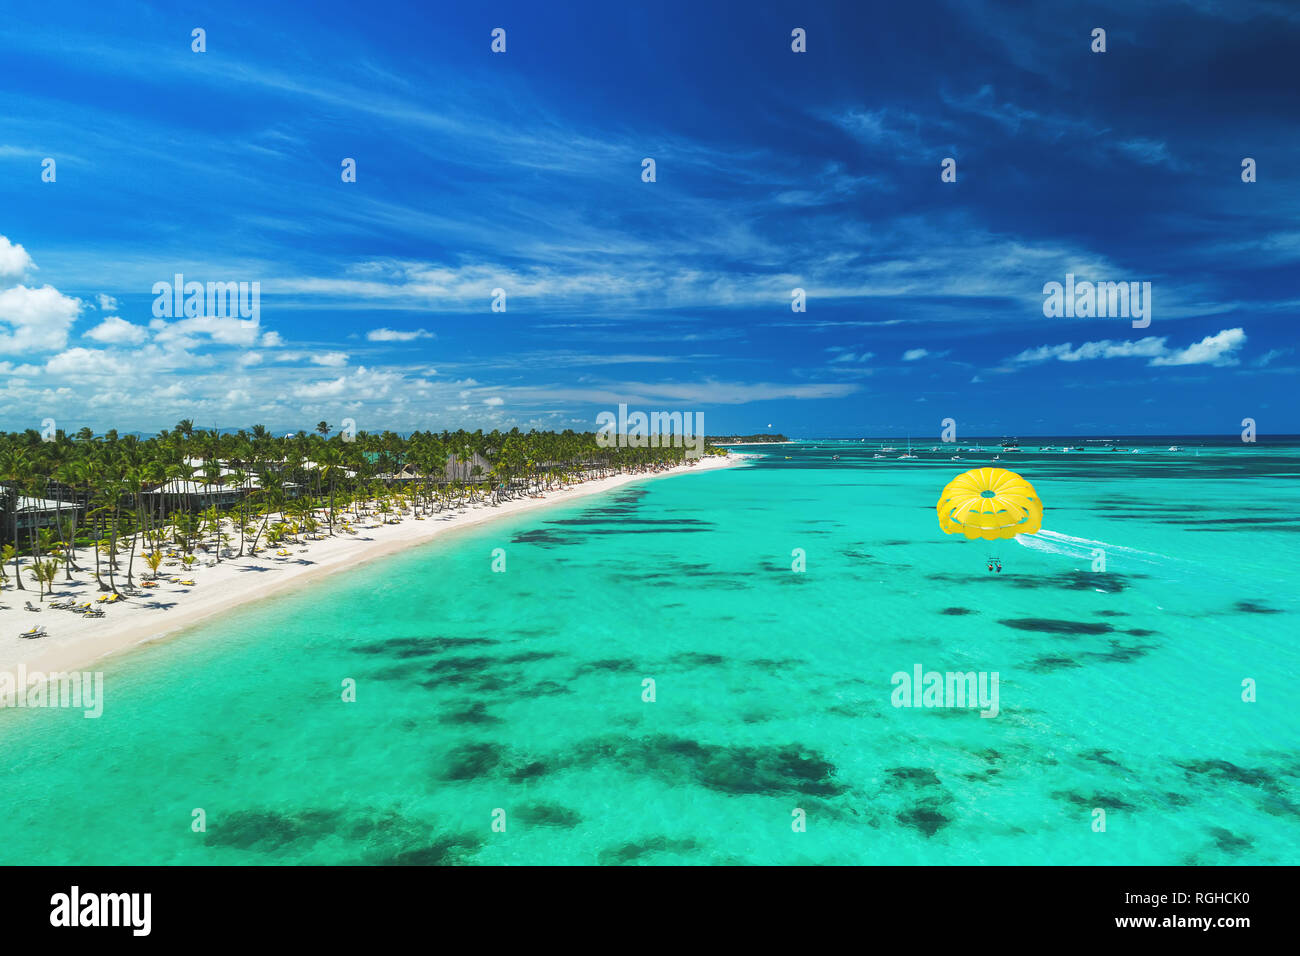 Tropischer Urlaub in Punta Cana, Dominikanische Republik. Luftaufnahme über  Beach Resort. Parasailing. Sonnenbaden Stockfotografie - Alamy